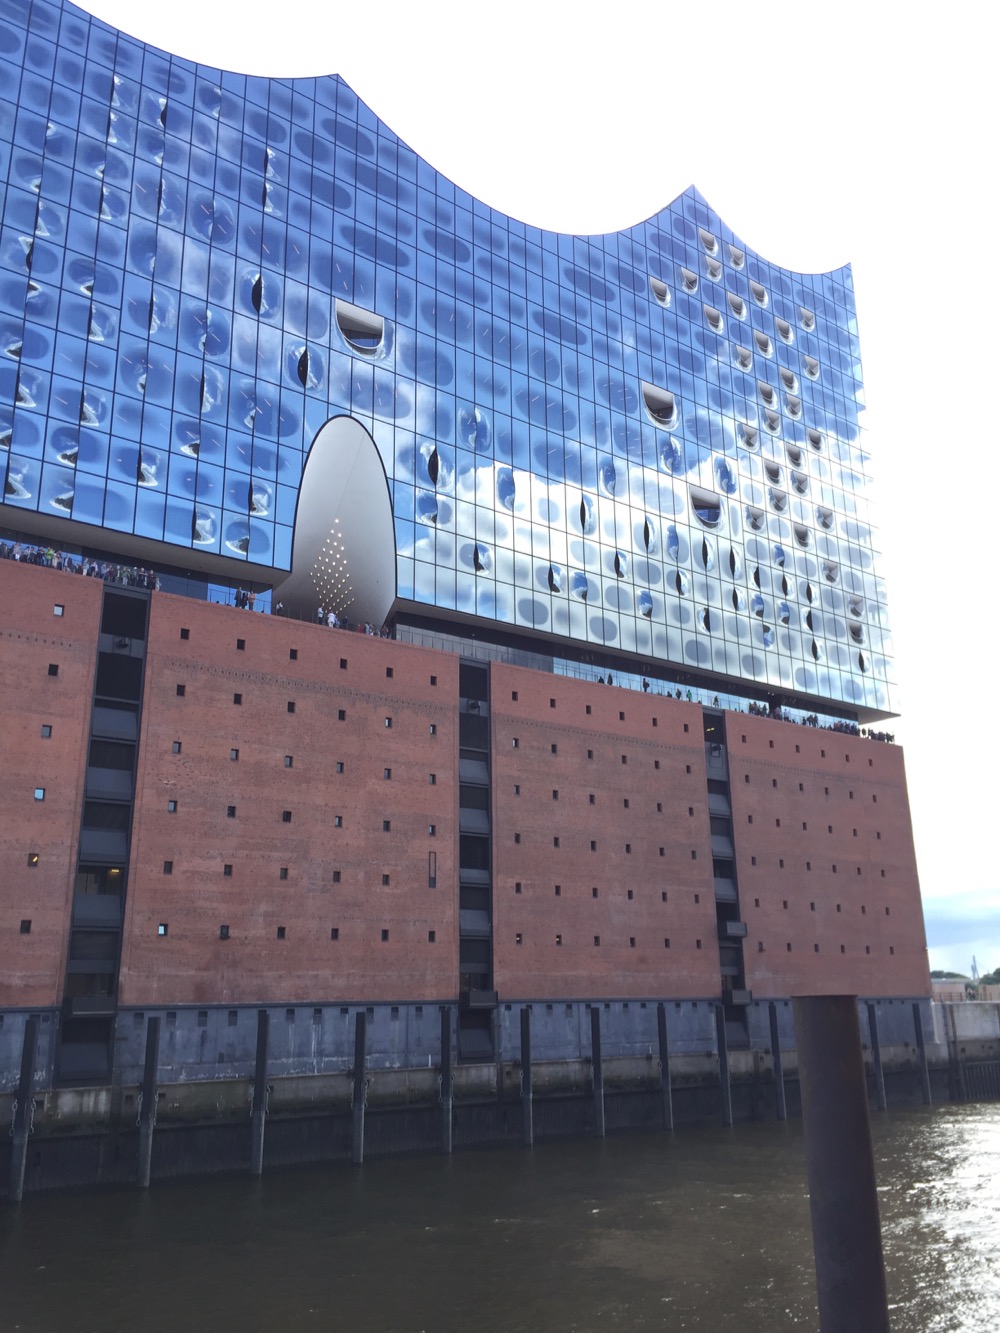 Je bekijkt nu Hamburg’s havengebied – 2017